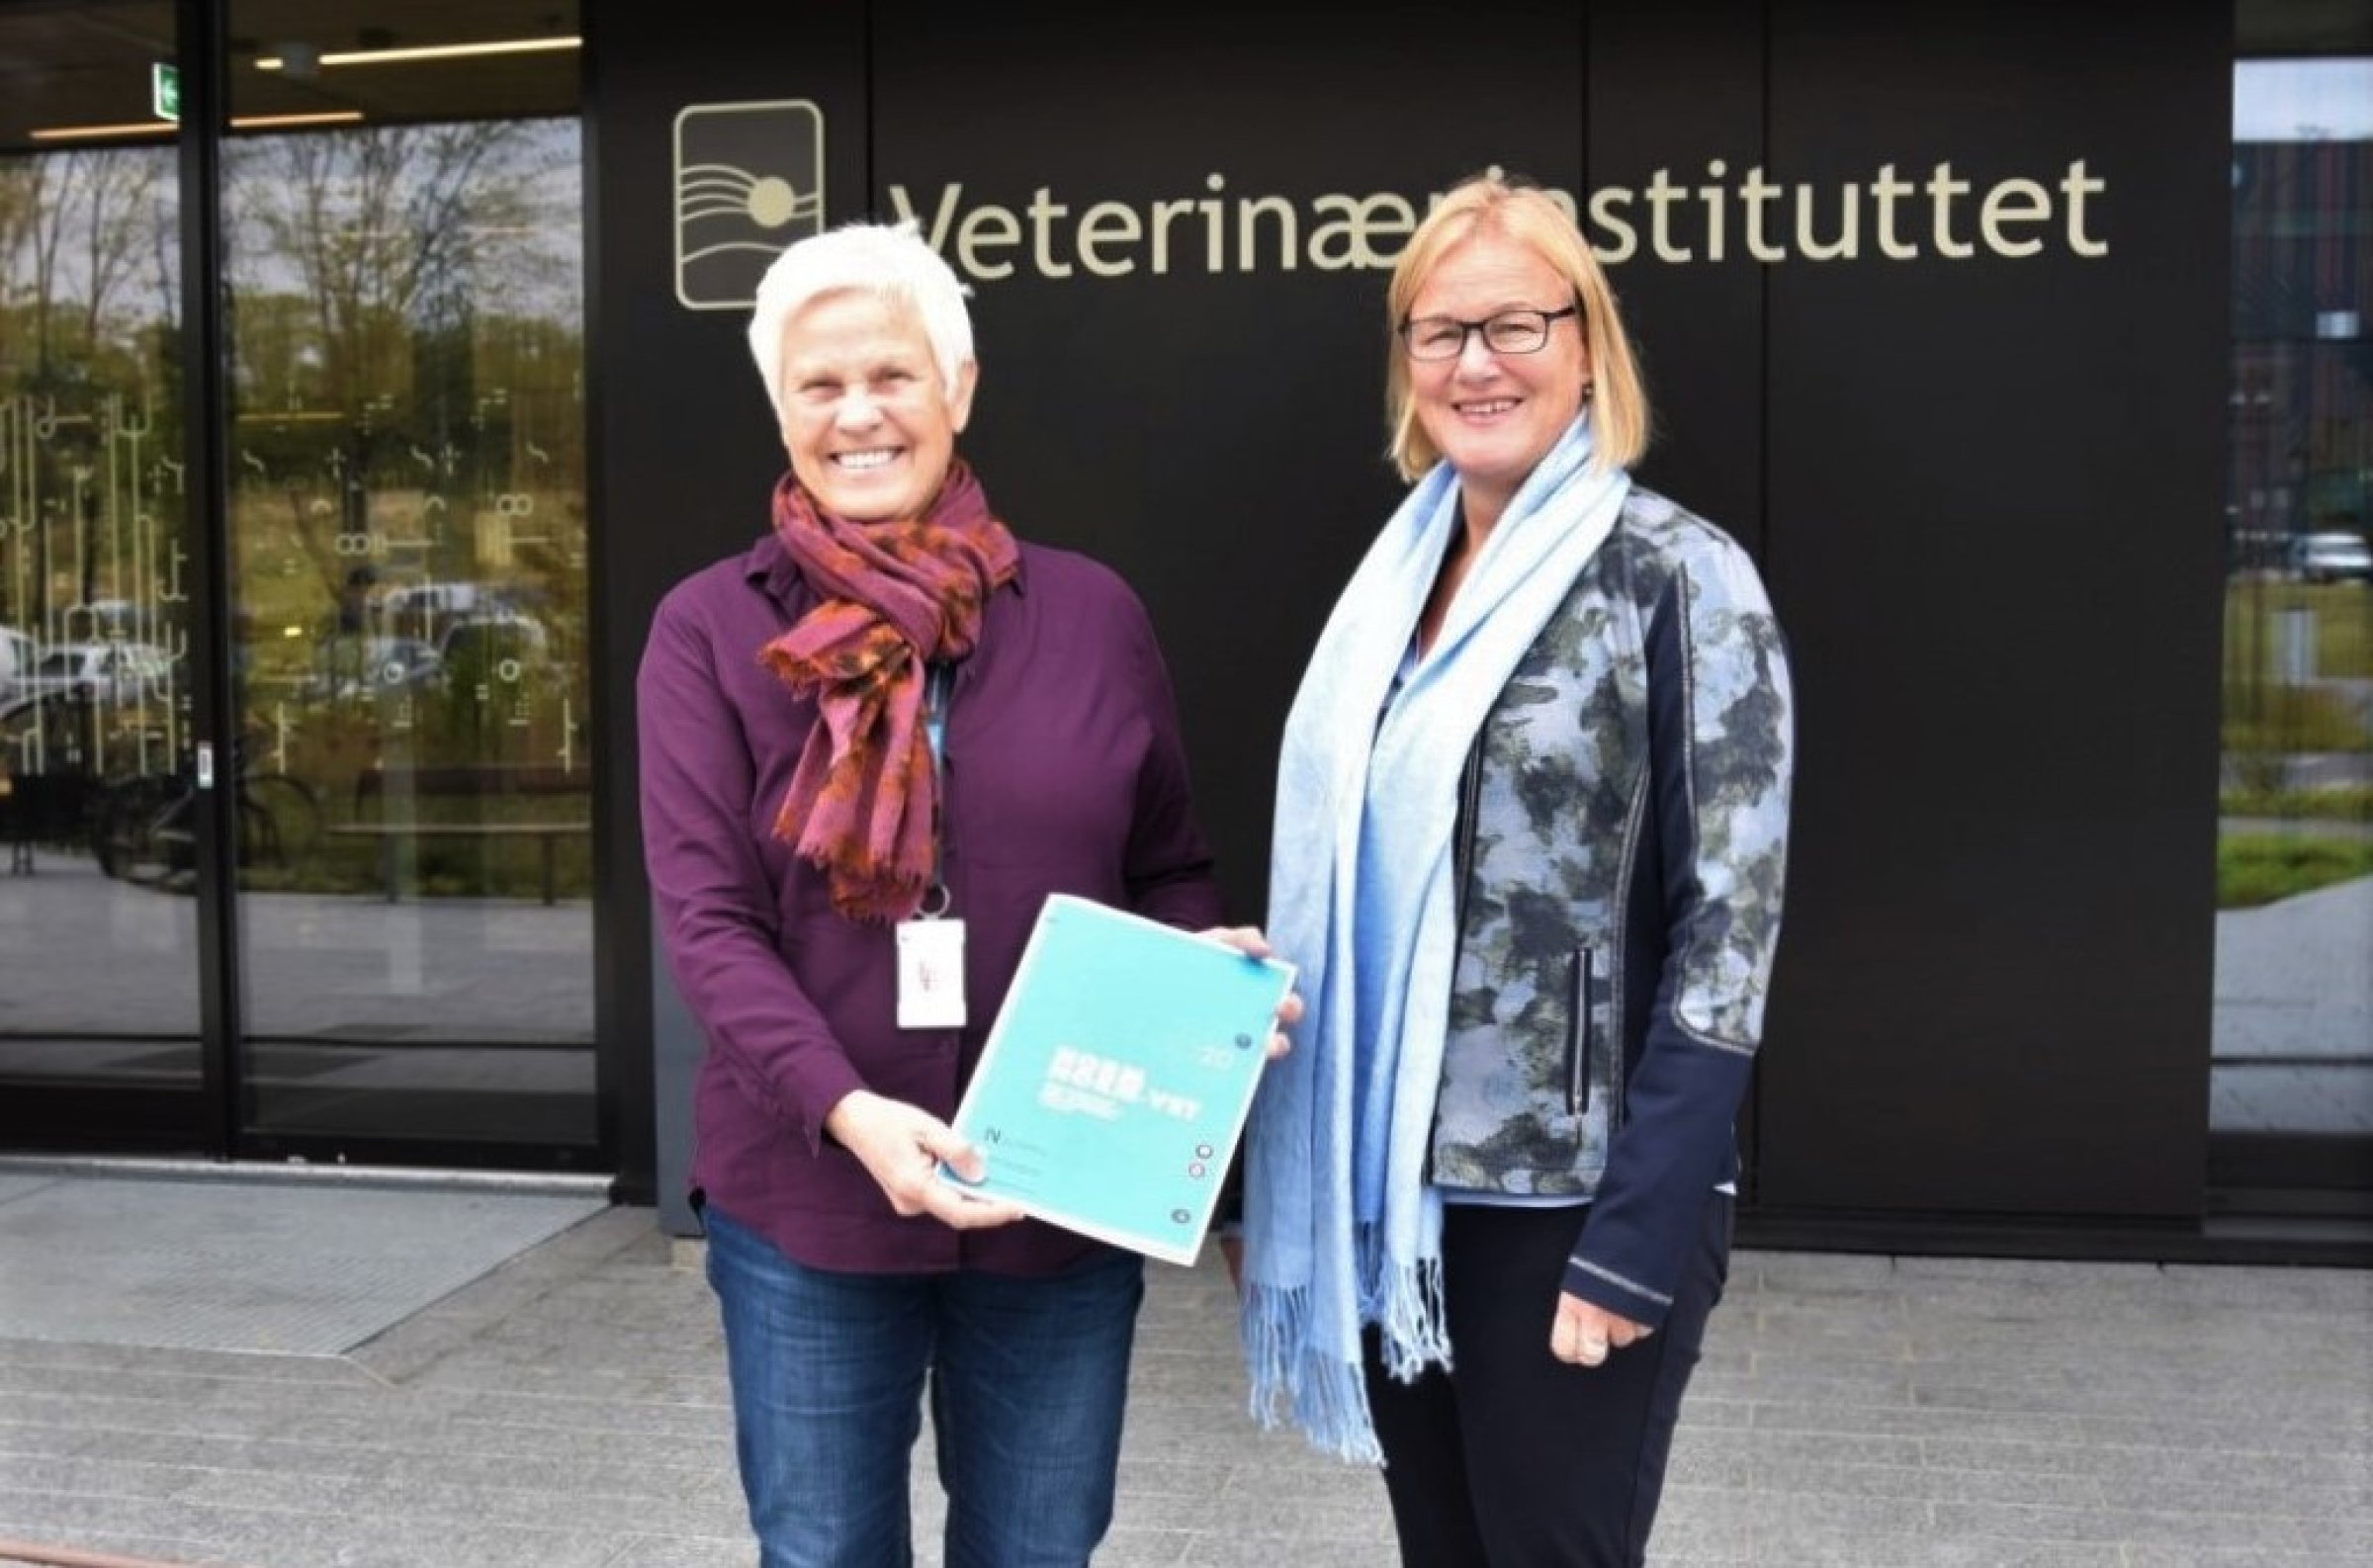 Adm. direktør Jorun Jarp og seniorforsker Anne Margrete Urdahl ved Veterinærinstituttet presenterte i dag konklusjonene fra NORM-VET-rapporten. Foto: Mari M. Press